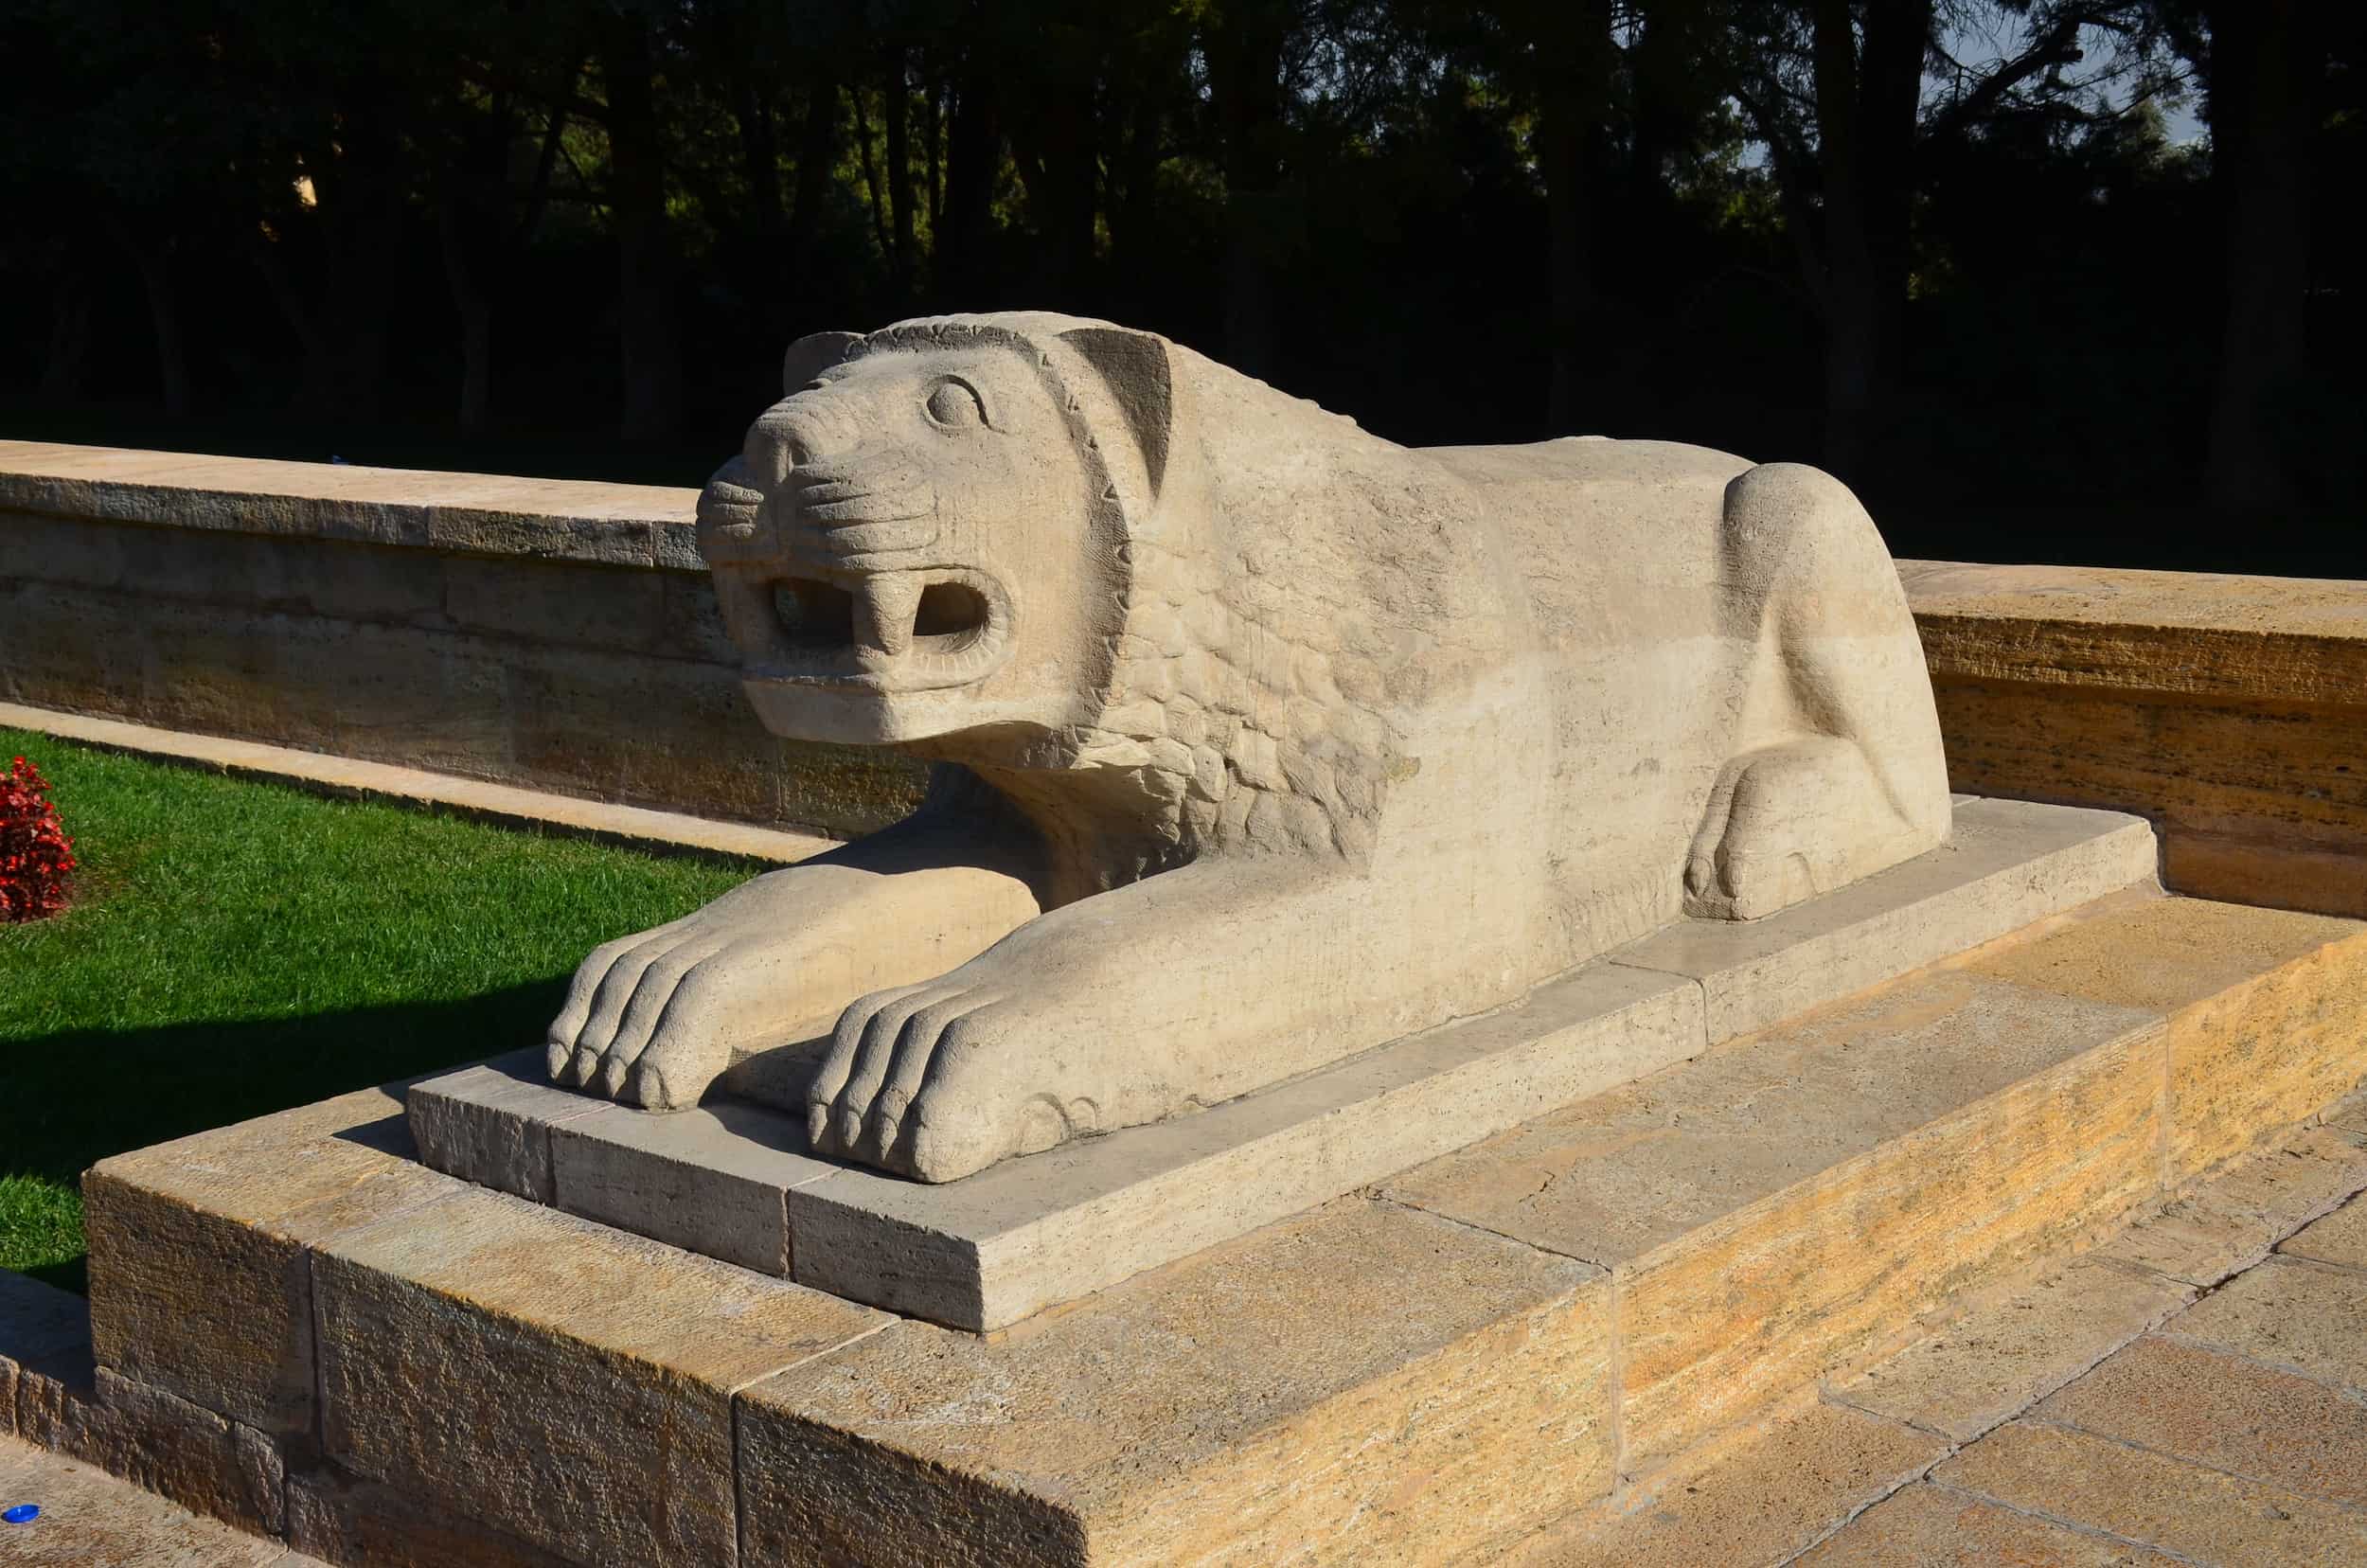 Lion sculpture at Anıtkabir in Ankara, Turkey